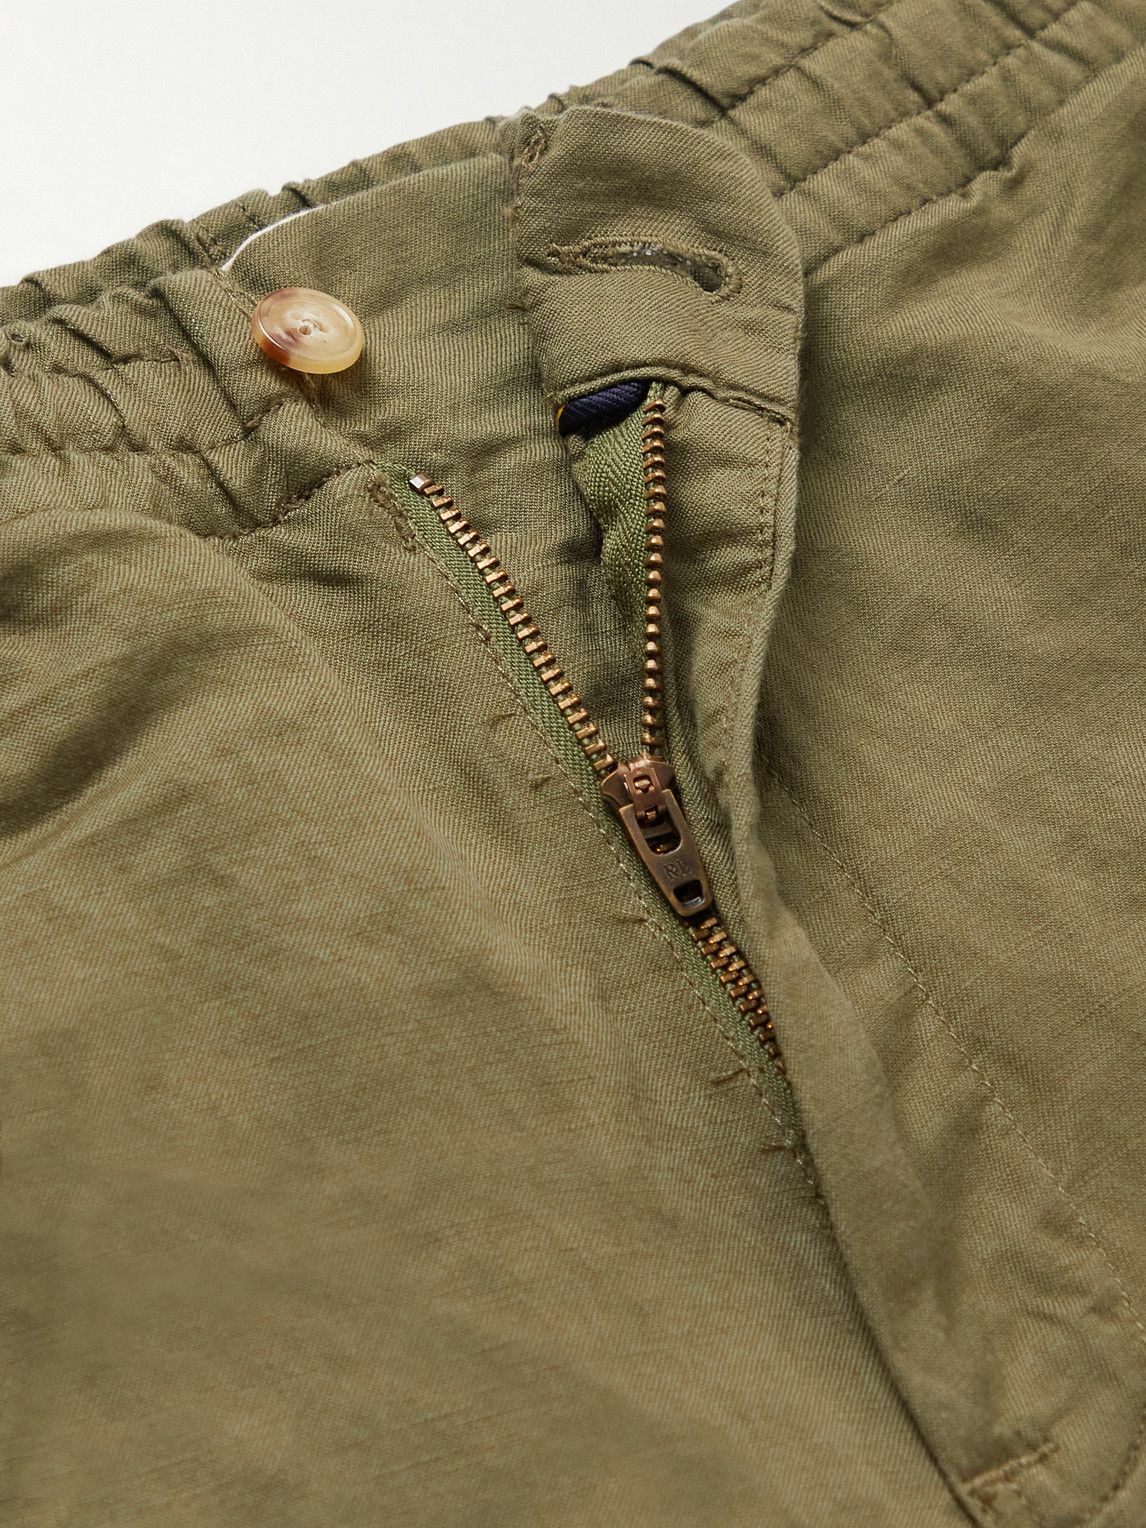 Polo Ralph Lauren - Prepster Straight-Leg Linen-Blend Shorts - Green